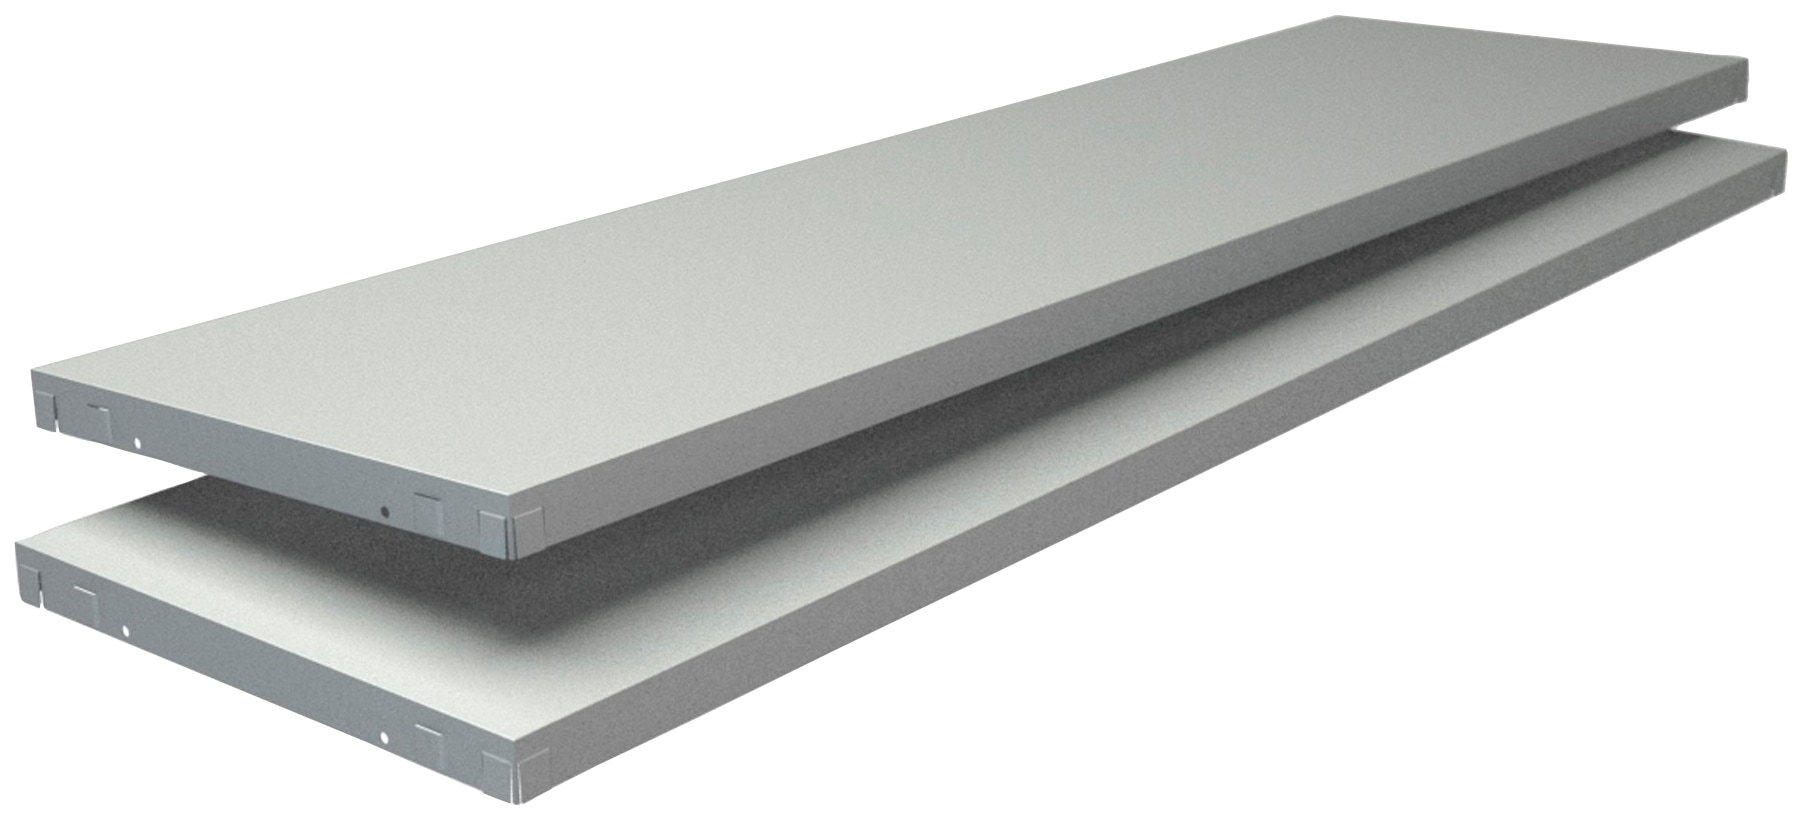 SCHULTE Regalwelt Regalelement "Stecksystem-Fachboden PowerMax", 2 Stück weiß, 1200x350 mm